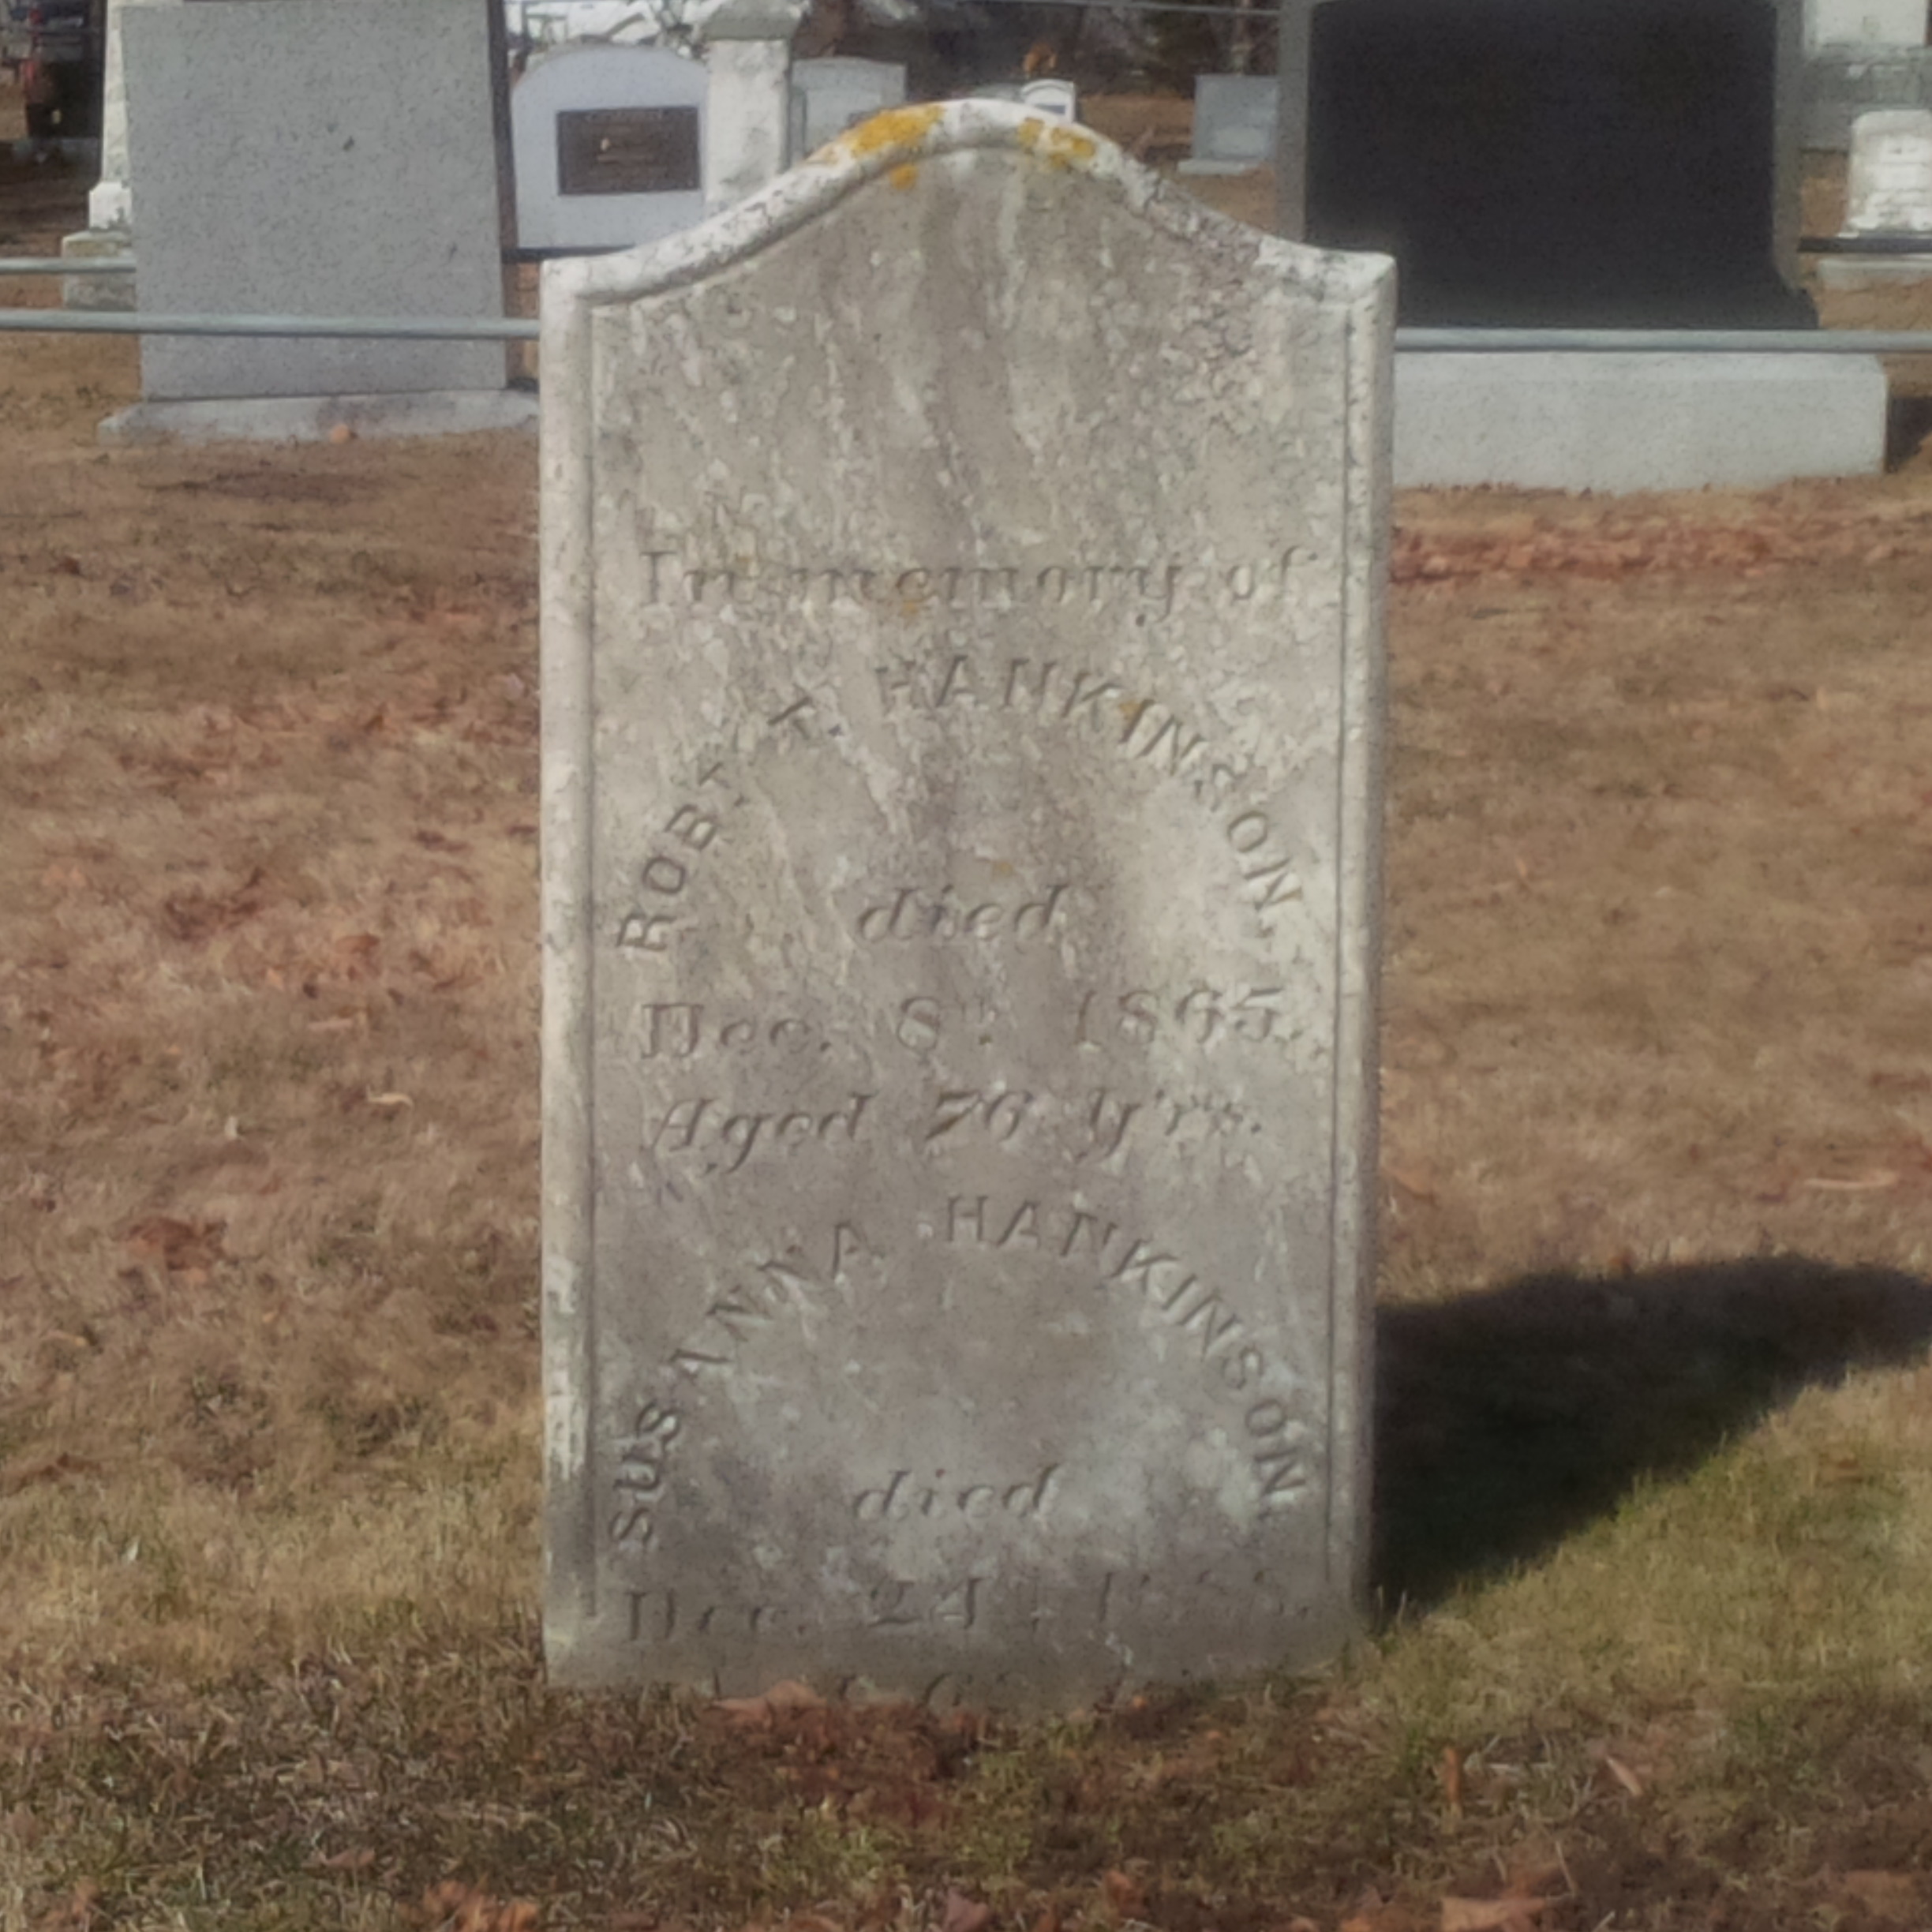 Robert and Susanna HANKINSON's tombstone.